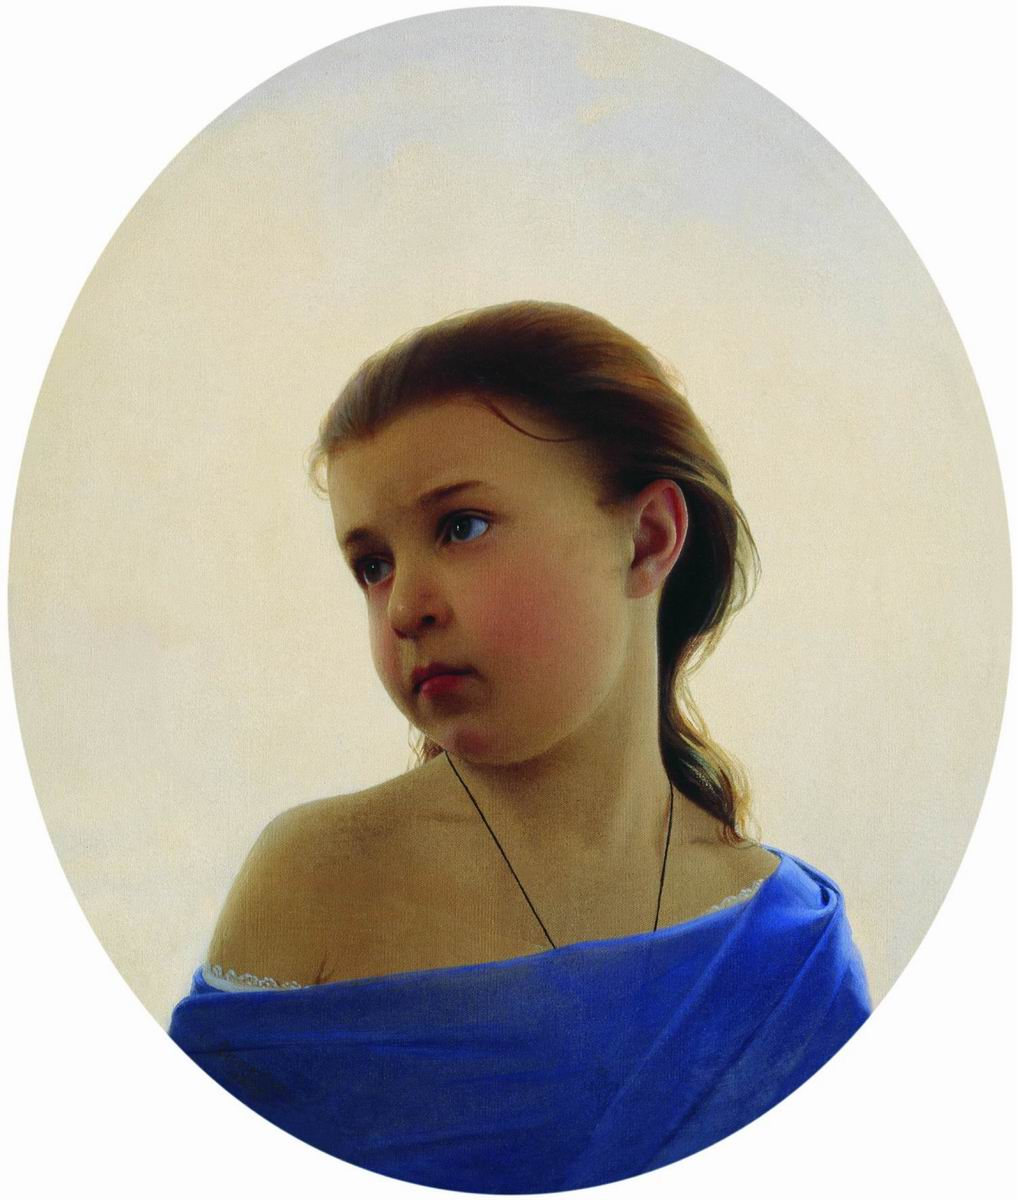 Зарянко. Девочка в голубом платье. Портрет Наталии Сергеевны Зарянко, дочери художника. 1870